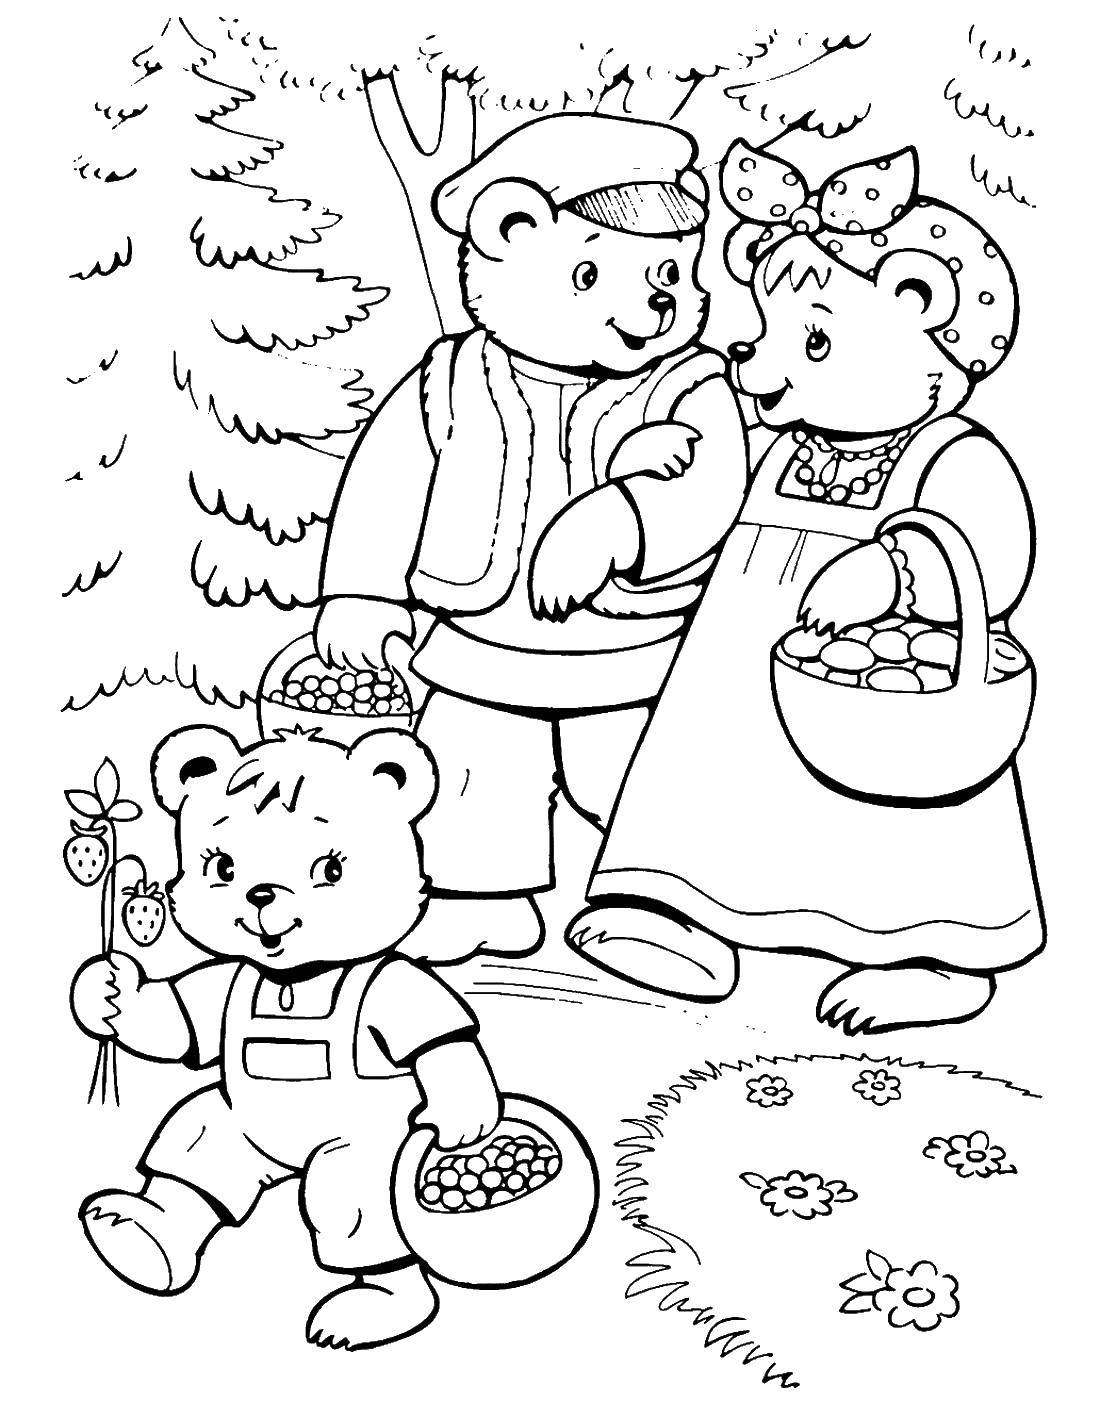 Опис: розмальовки  Ведмеді гуляють у лісі. Категорія: три ведмеді. Теги:  три ведмеді.